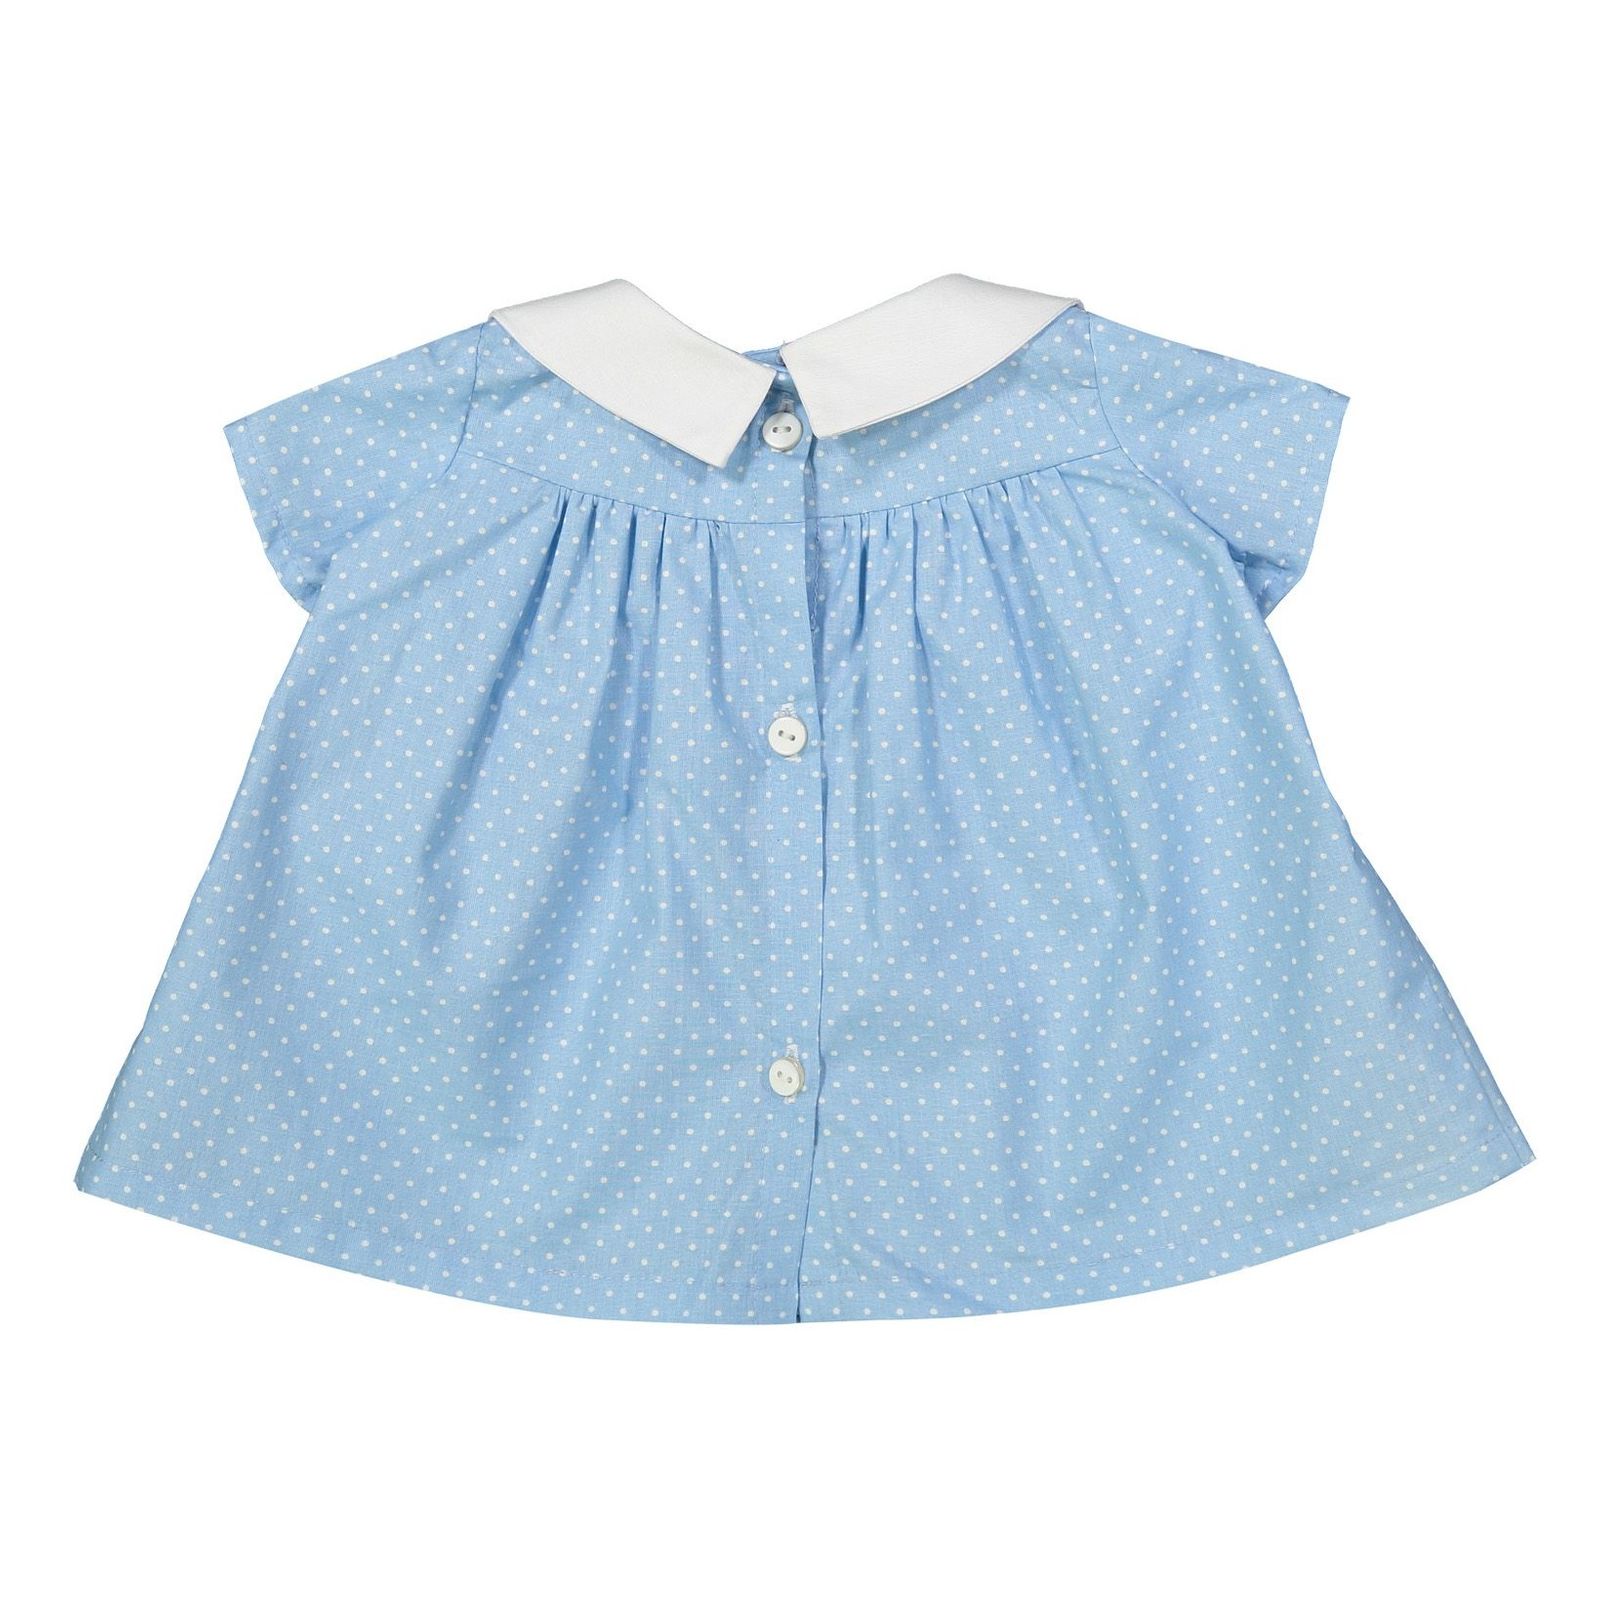 پیراهن نوزادی دخترانه دایان مدل 1321140-58 -  - 4